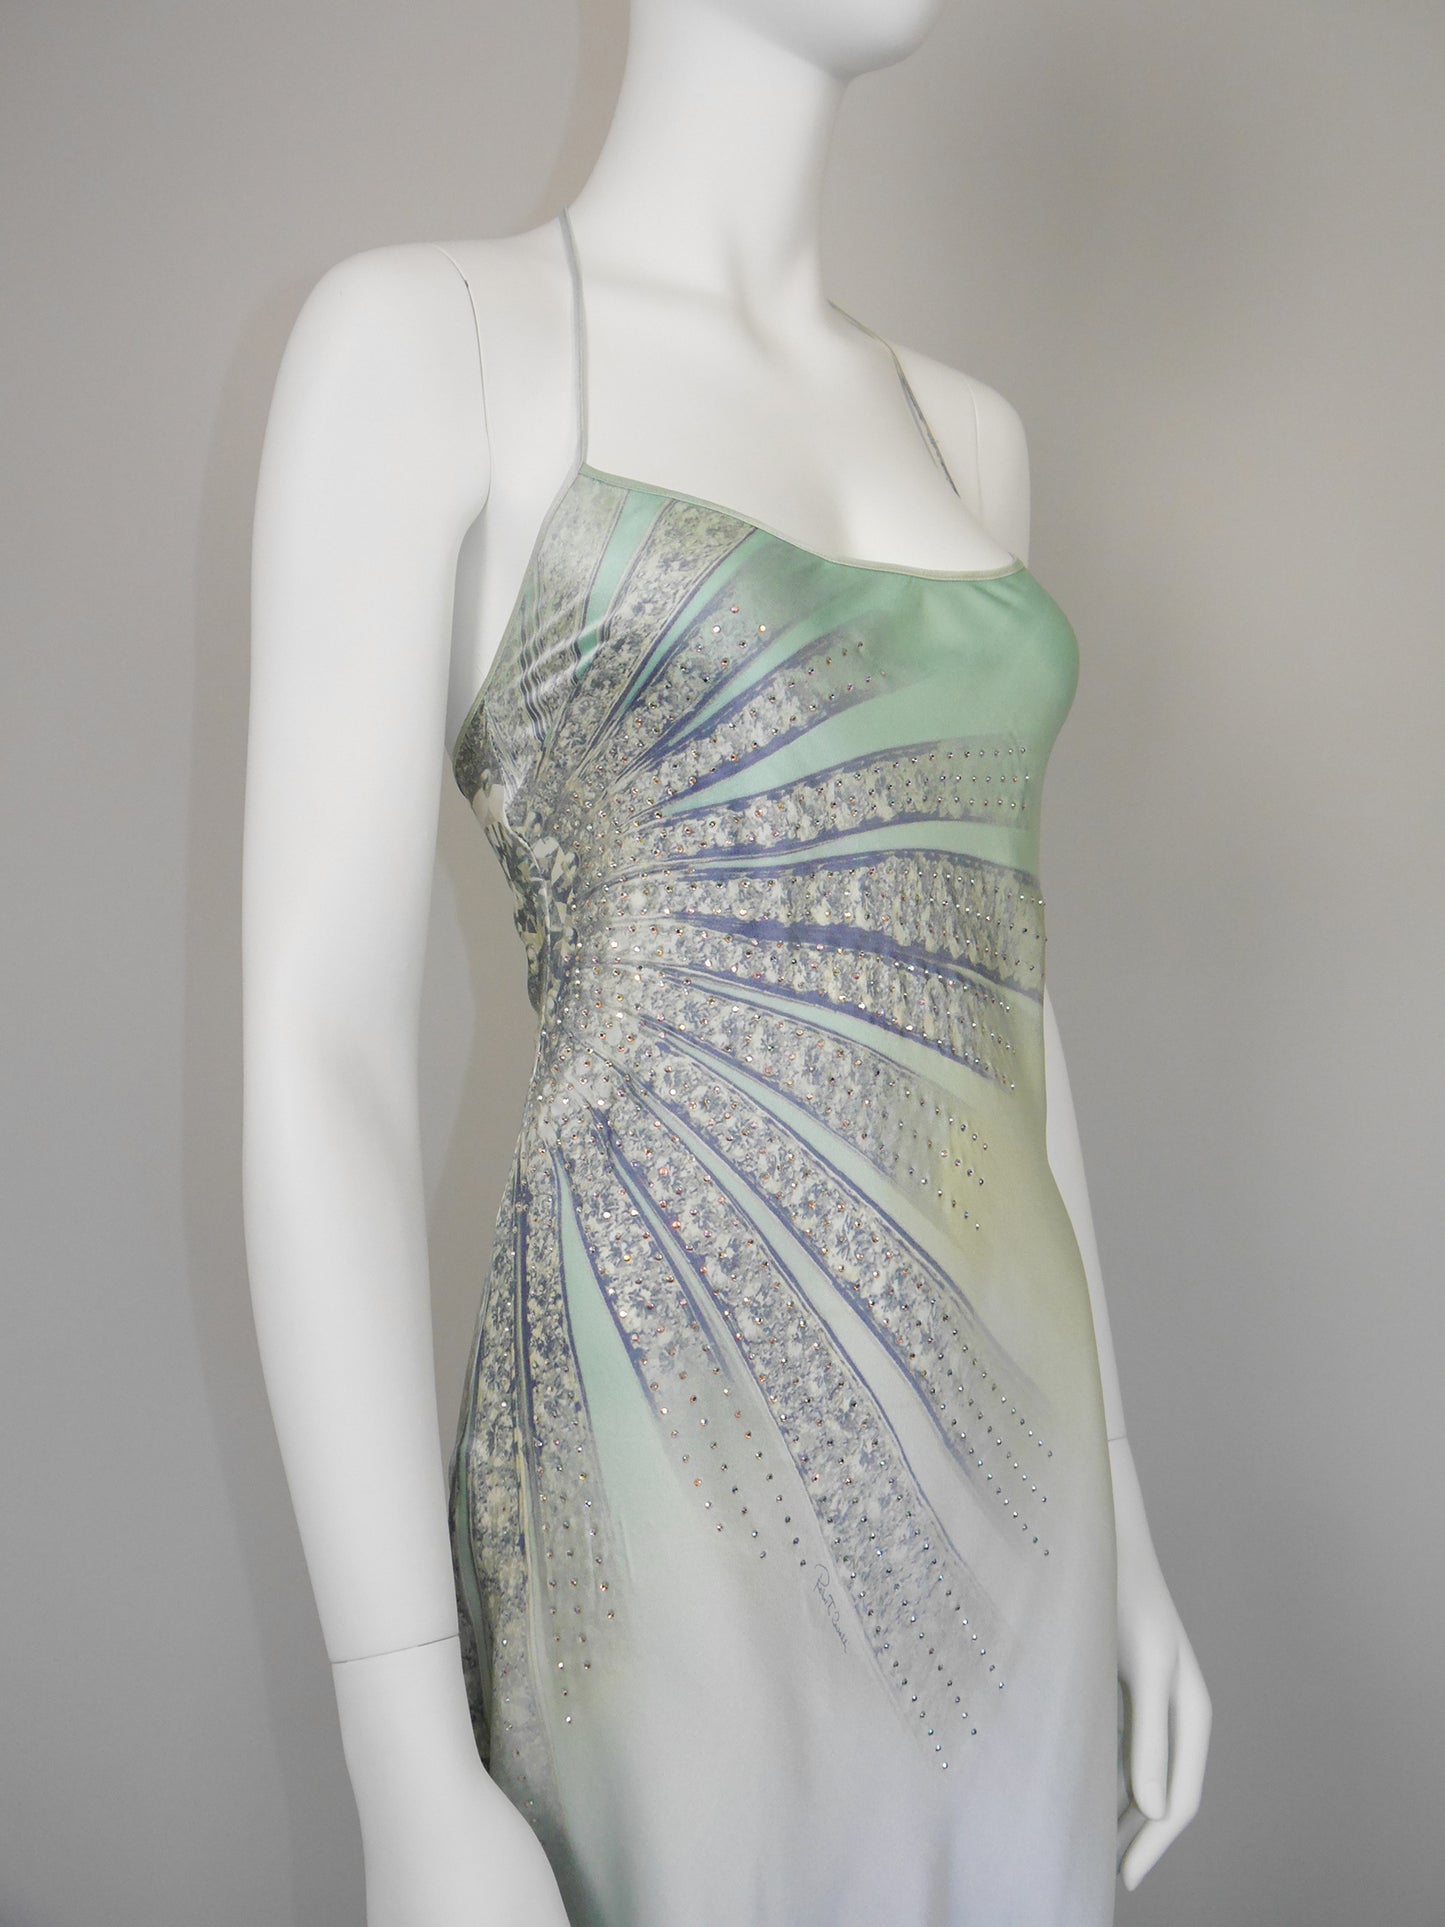 ROBERTO CAVALLI Spring 2000 Vintage Crystal Embellished Ombré Silk Slip Dress Size S